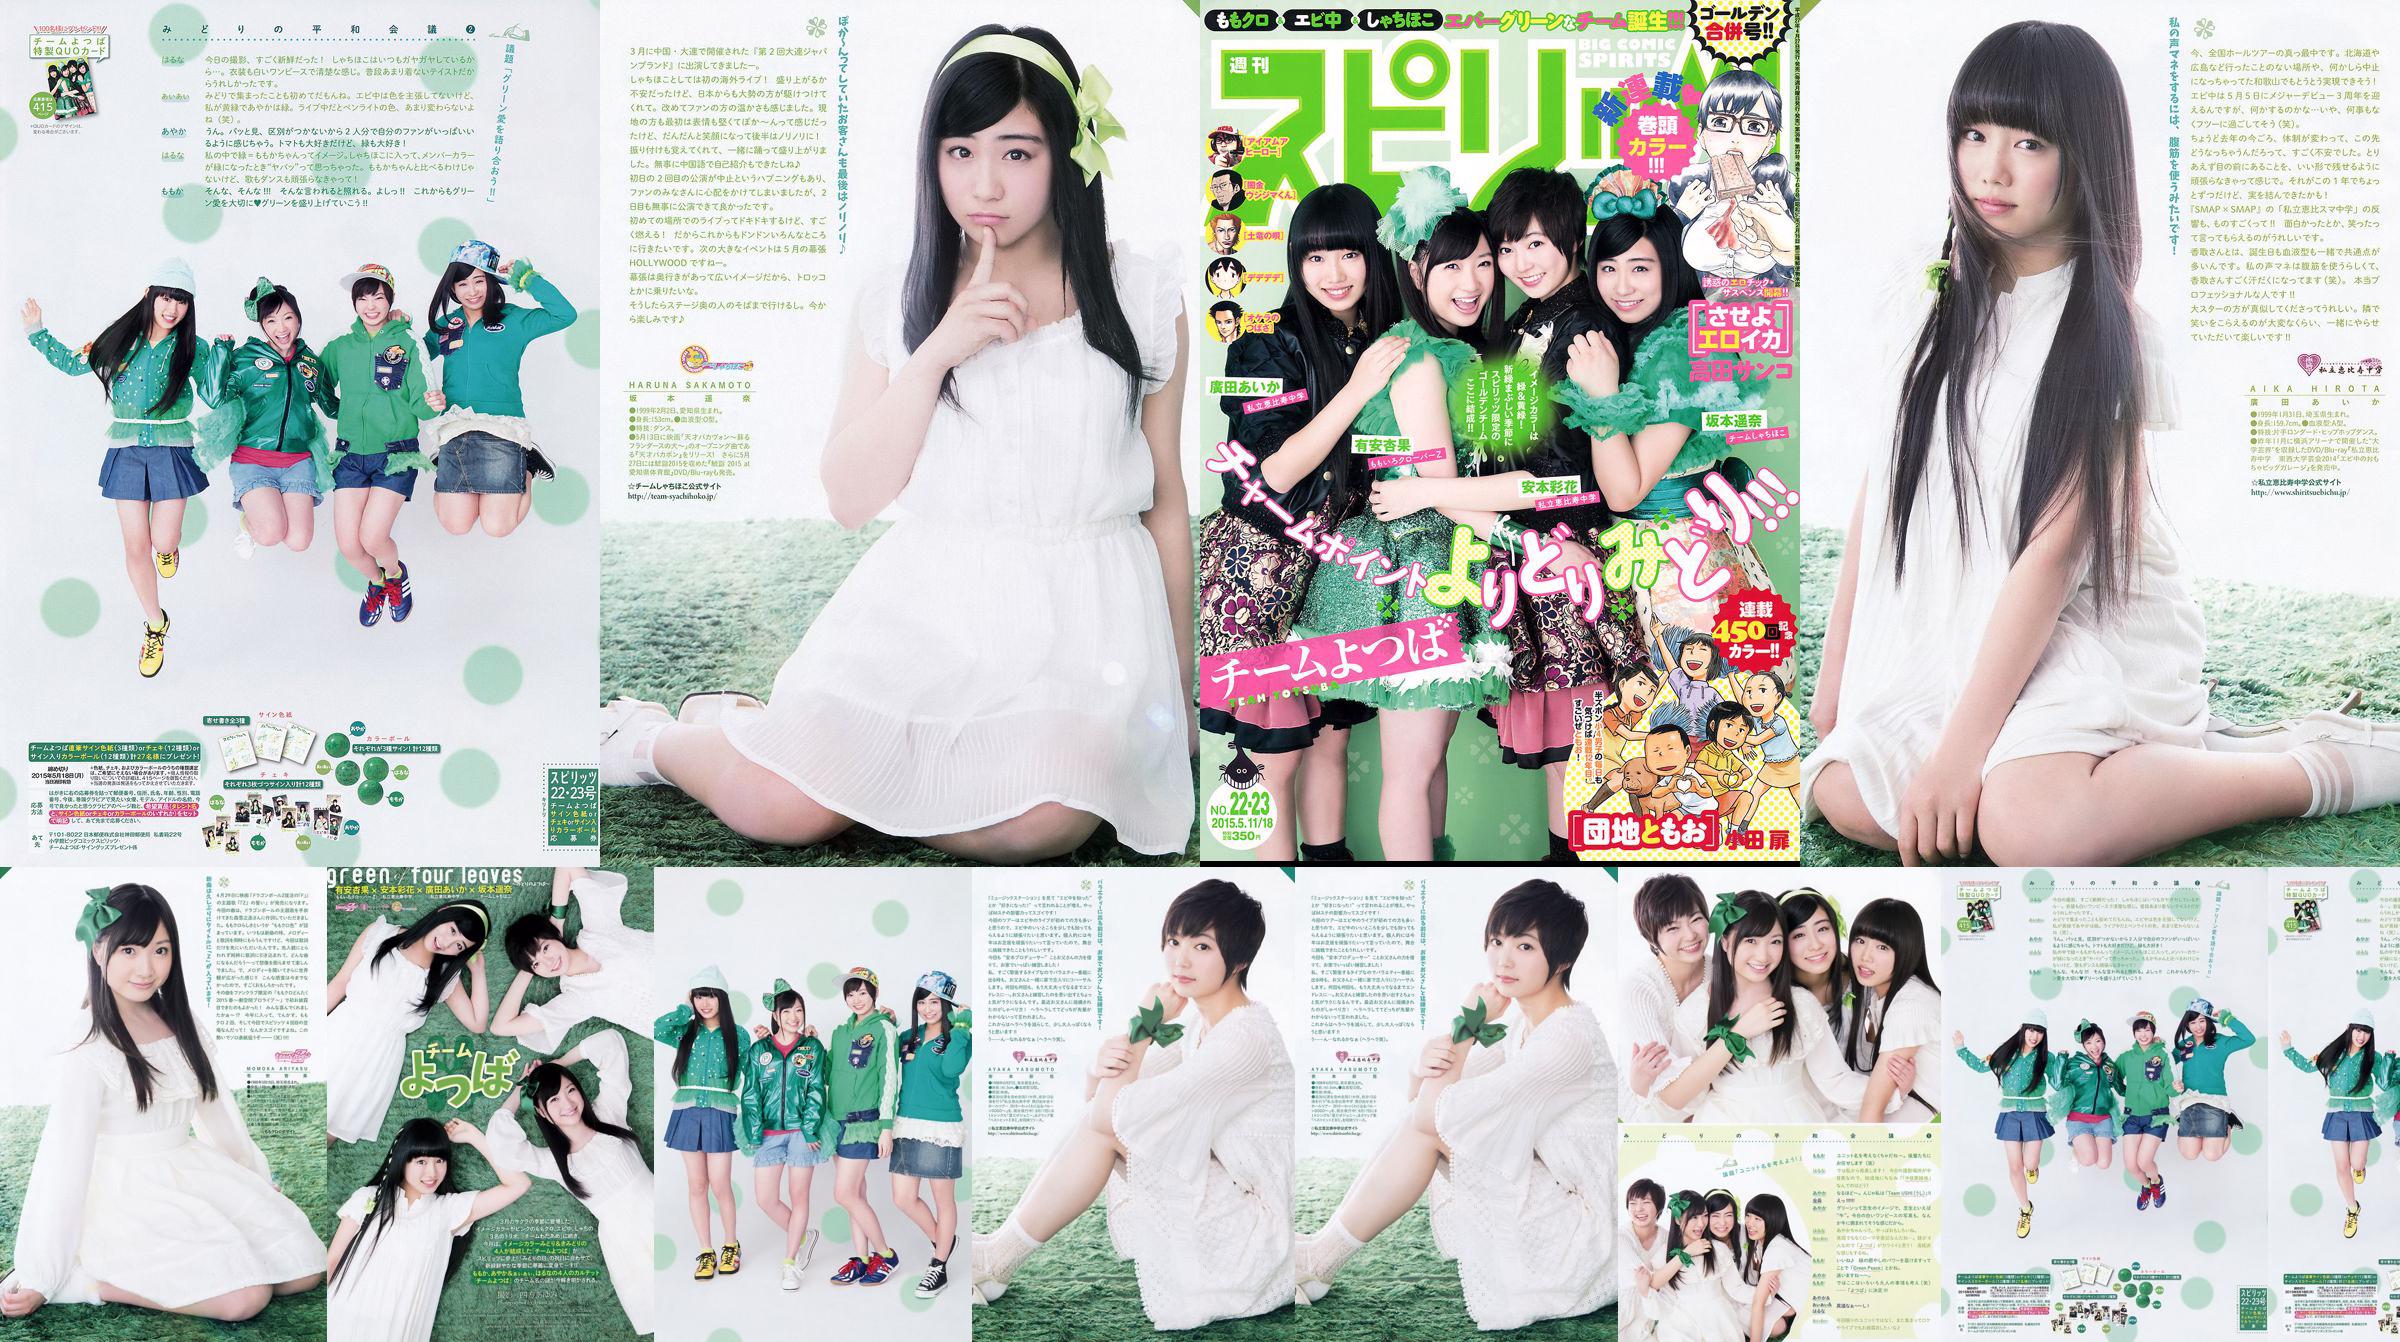 [Weekly Big Comic Spirits] Ayaka Ayana Ayana Sakamoto Haruna Hirota 2015 No.22-23 Photo Magazine No.fd57e4 หน้า 5